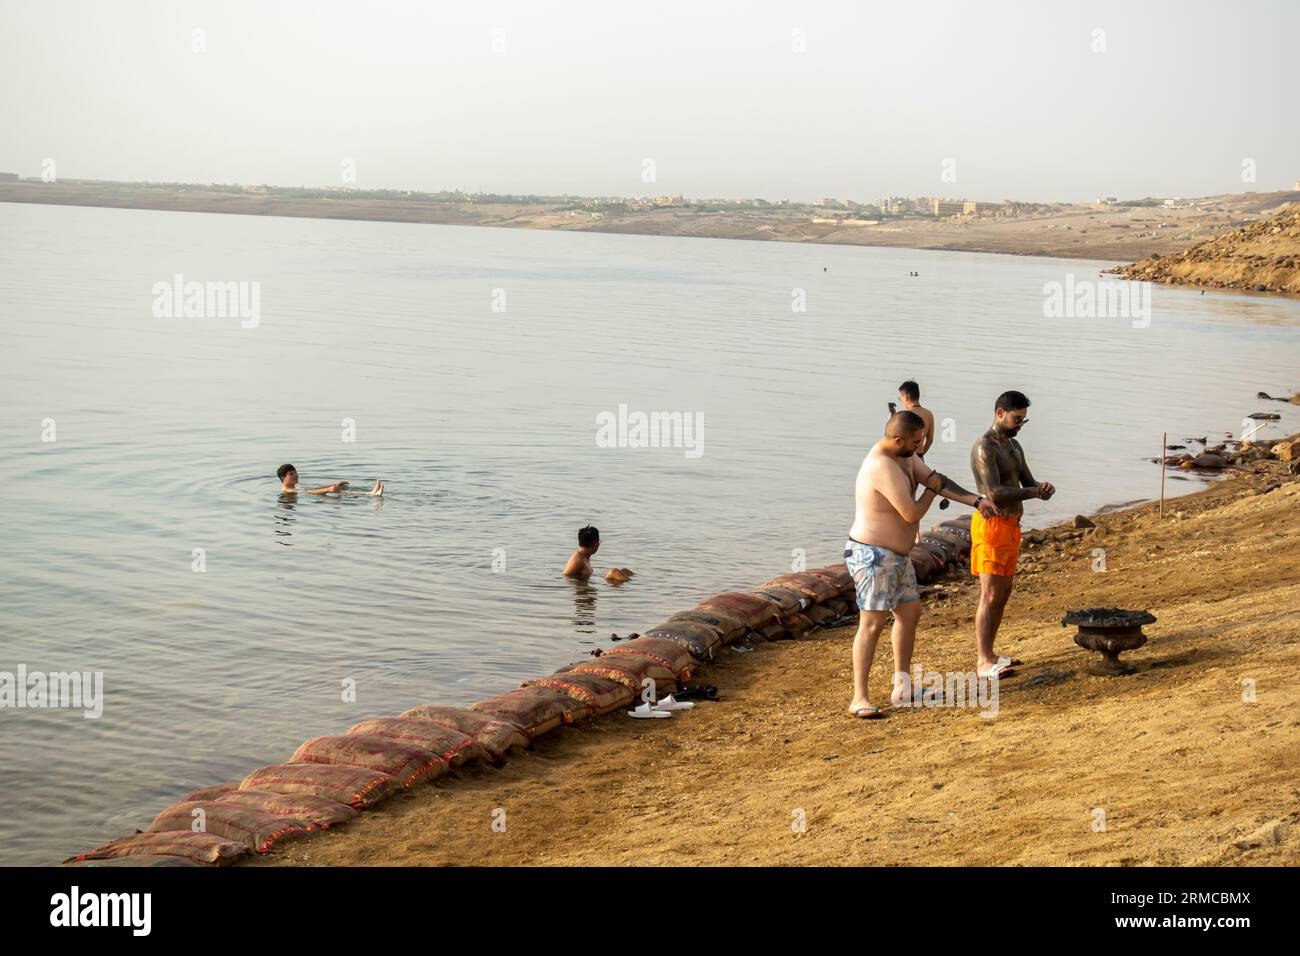 Les gens mettant de la boue avant d'aller à l'eau de la mer Morte en Jordanie les touristes couverts de boue nagent dans la mer Morte, Jordanie Banque D'Images